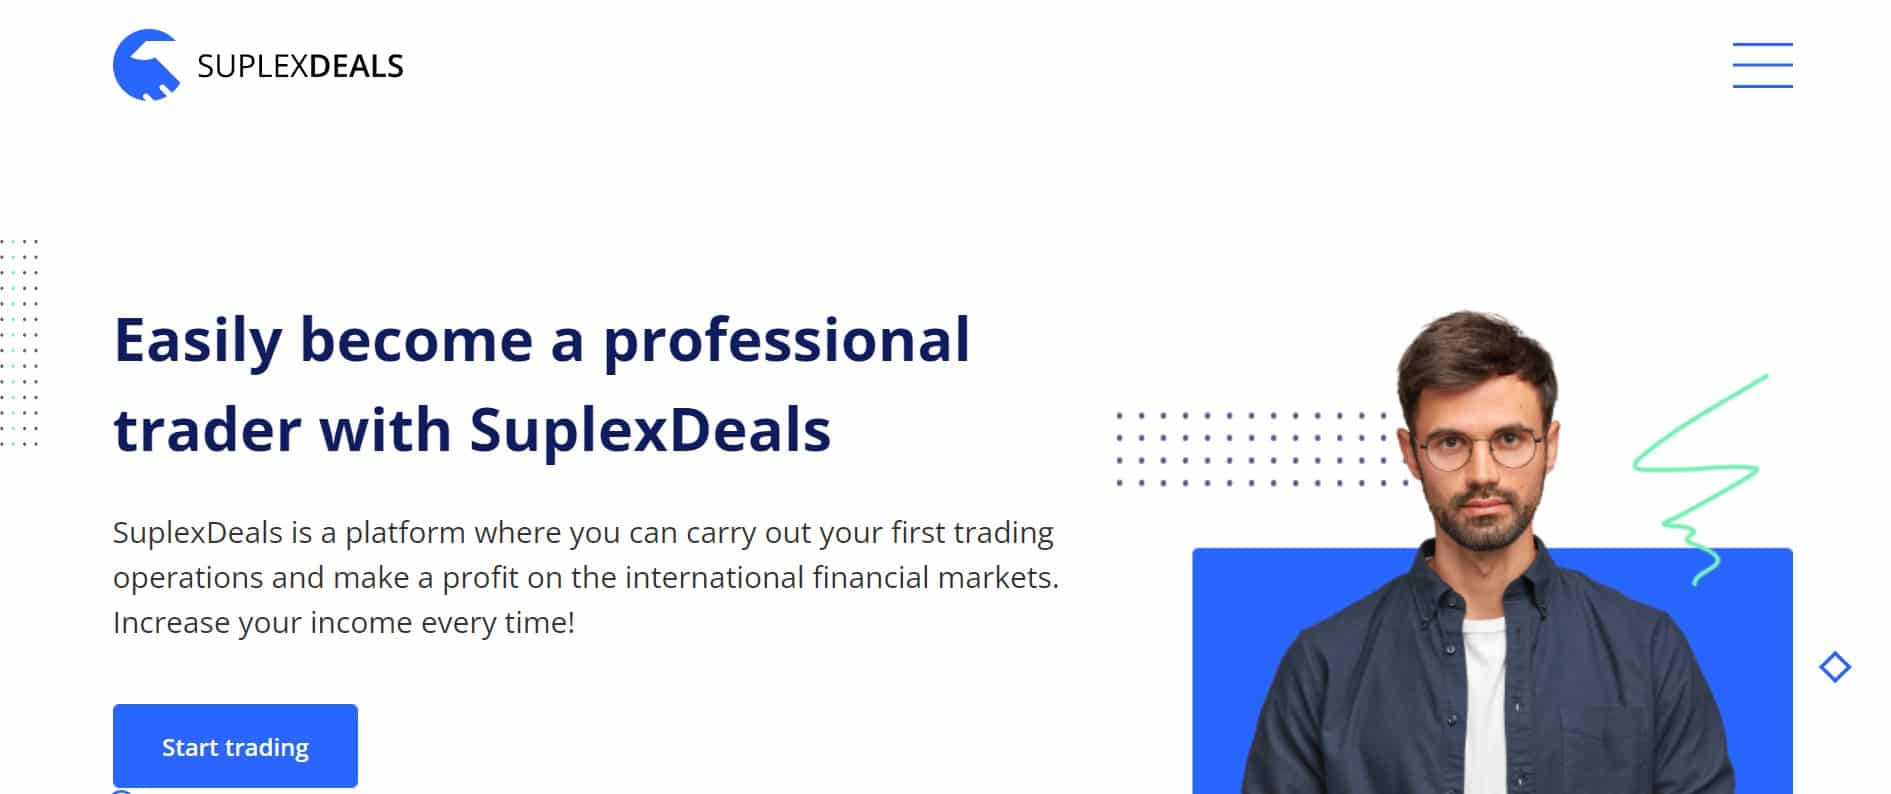 SuplexDeals website